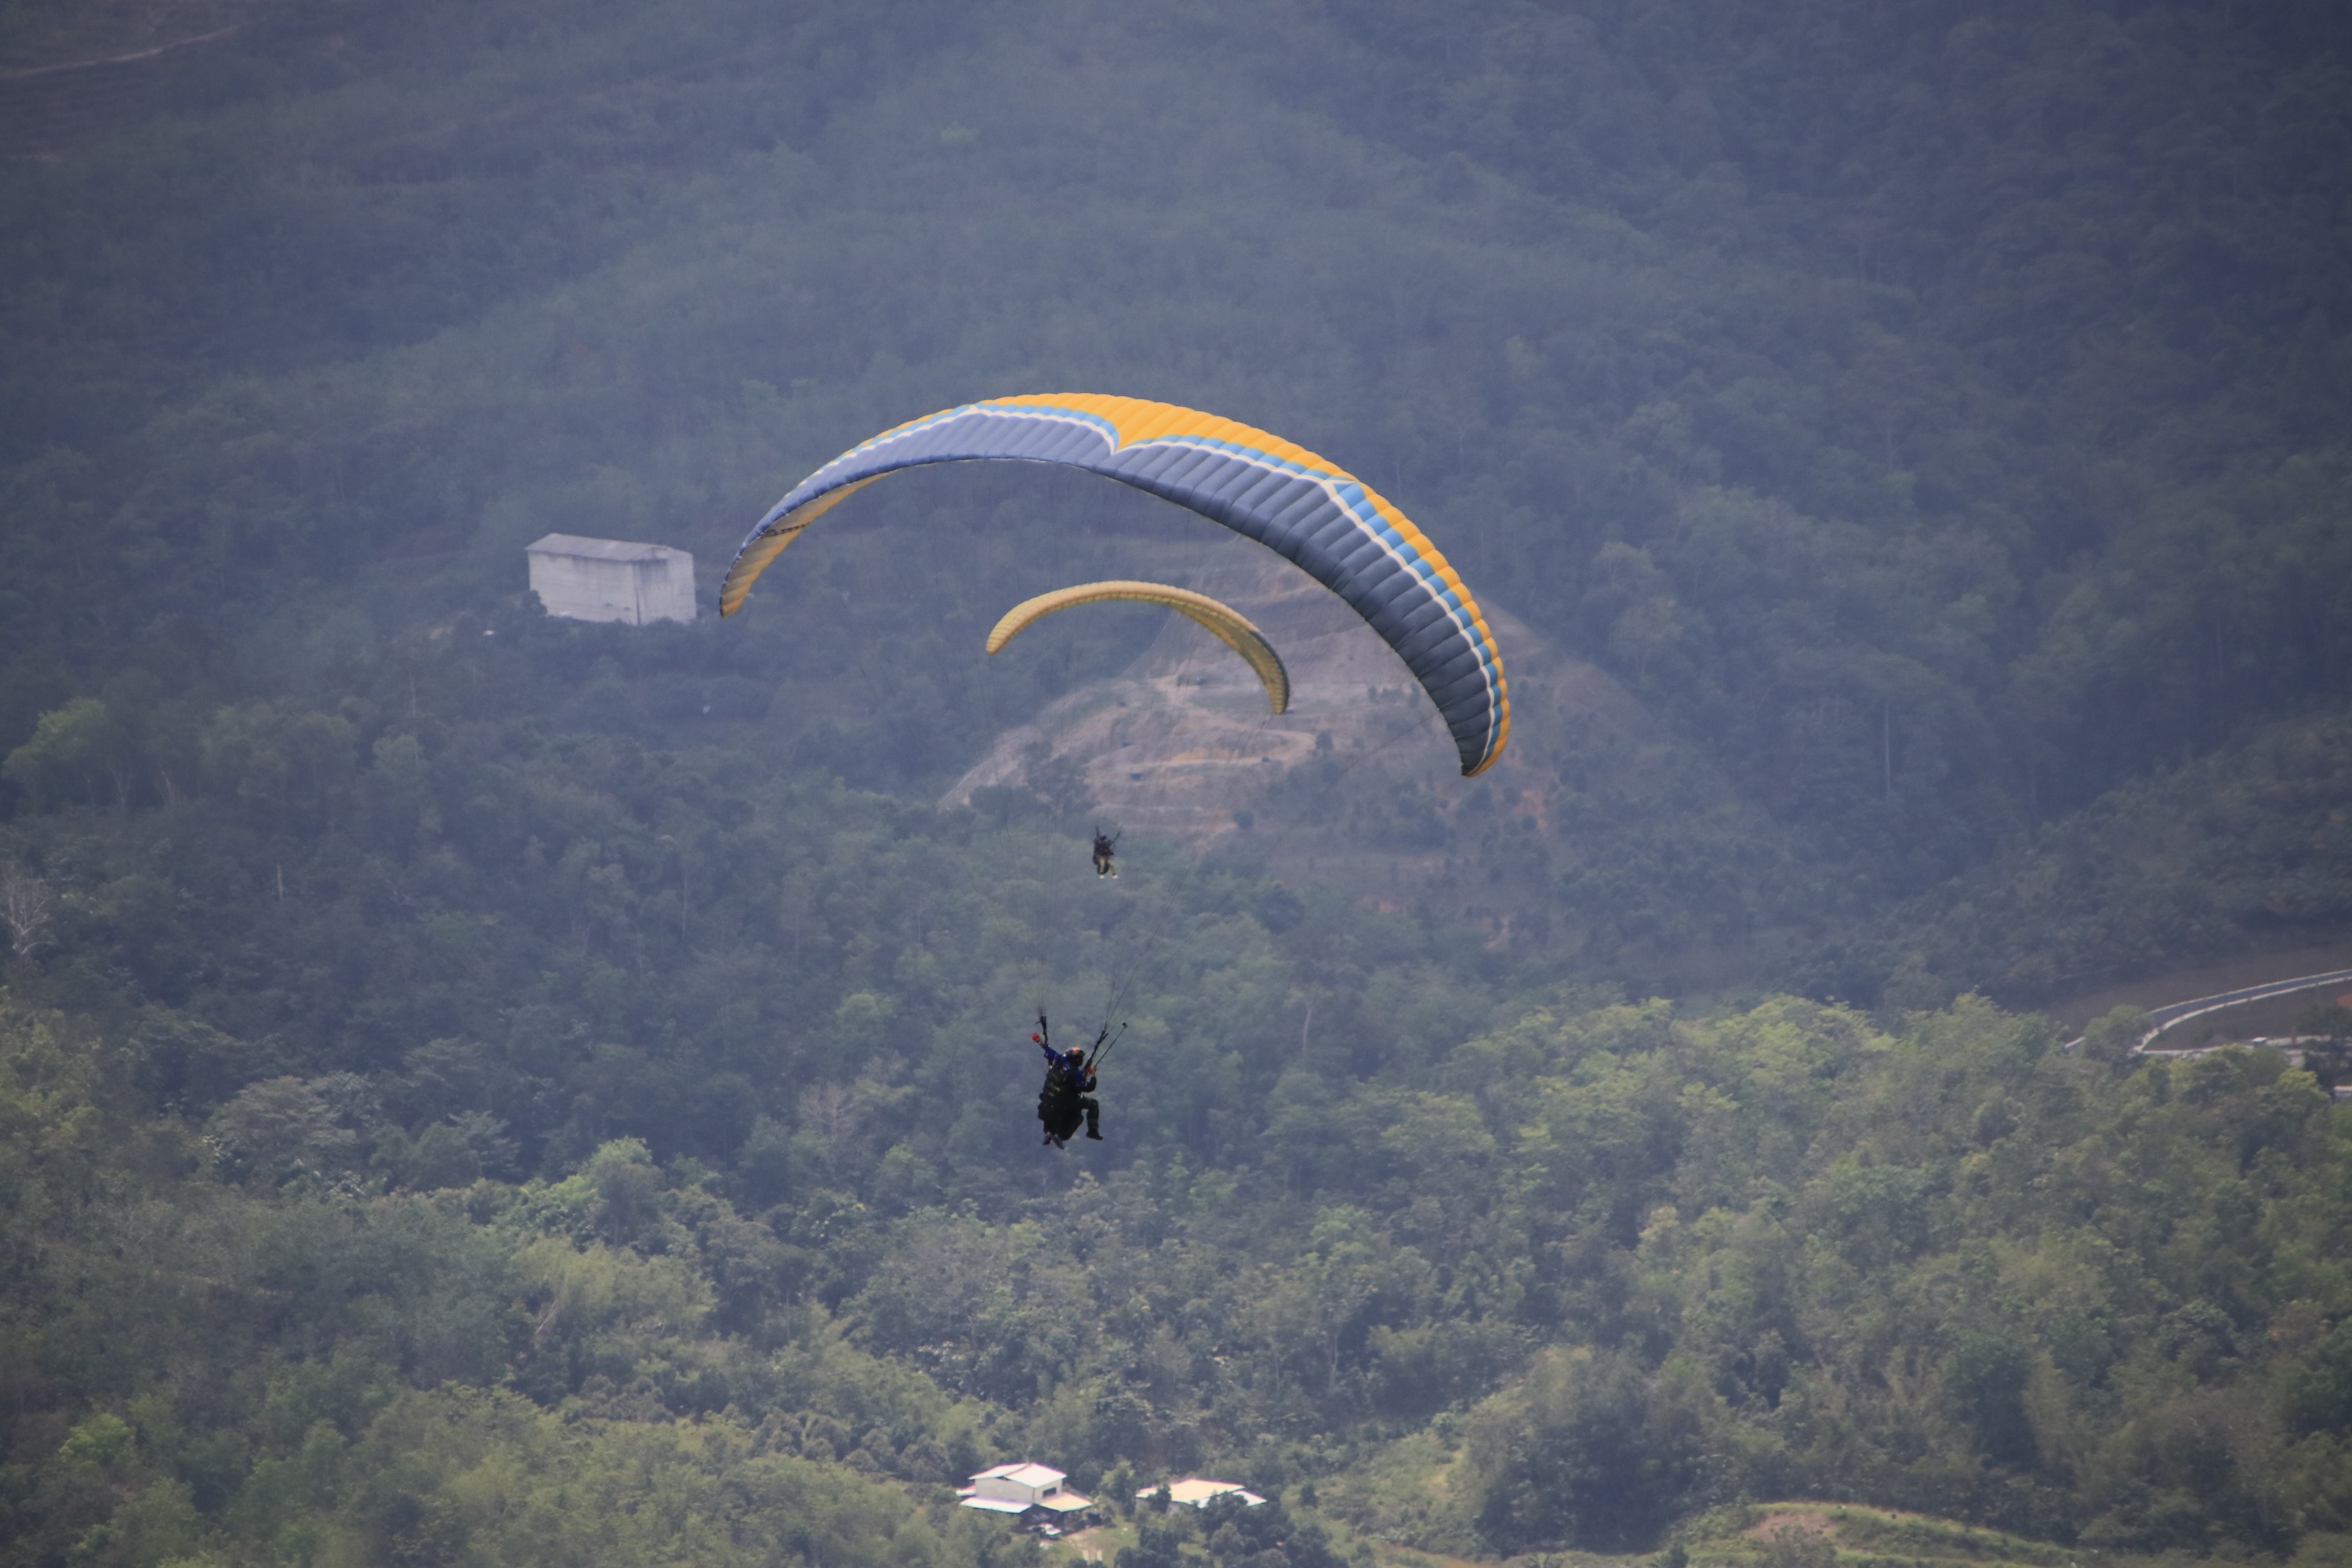 雪蘭莪專業雙人滑翔傘體驗